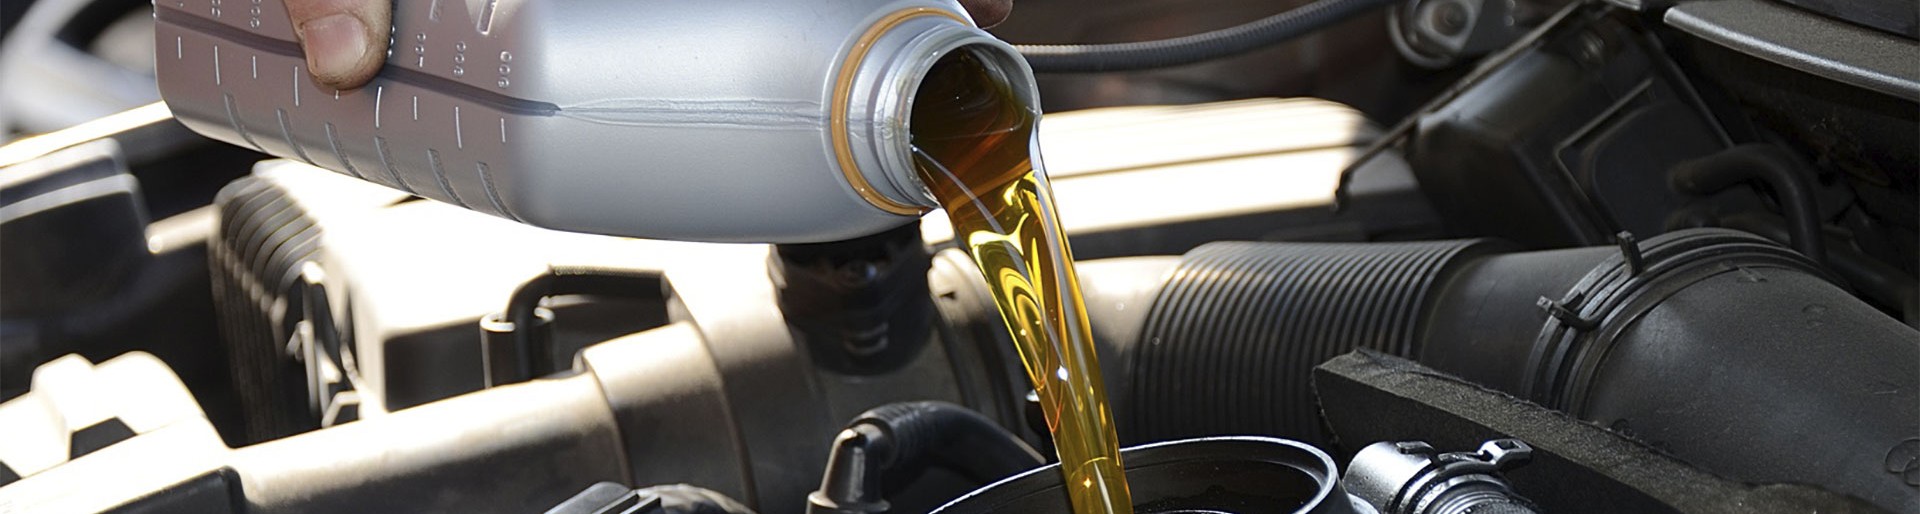 Nouvelle huile moteur dorée versée dans un moteur de voiture